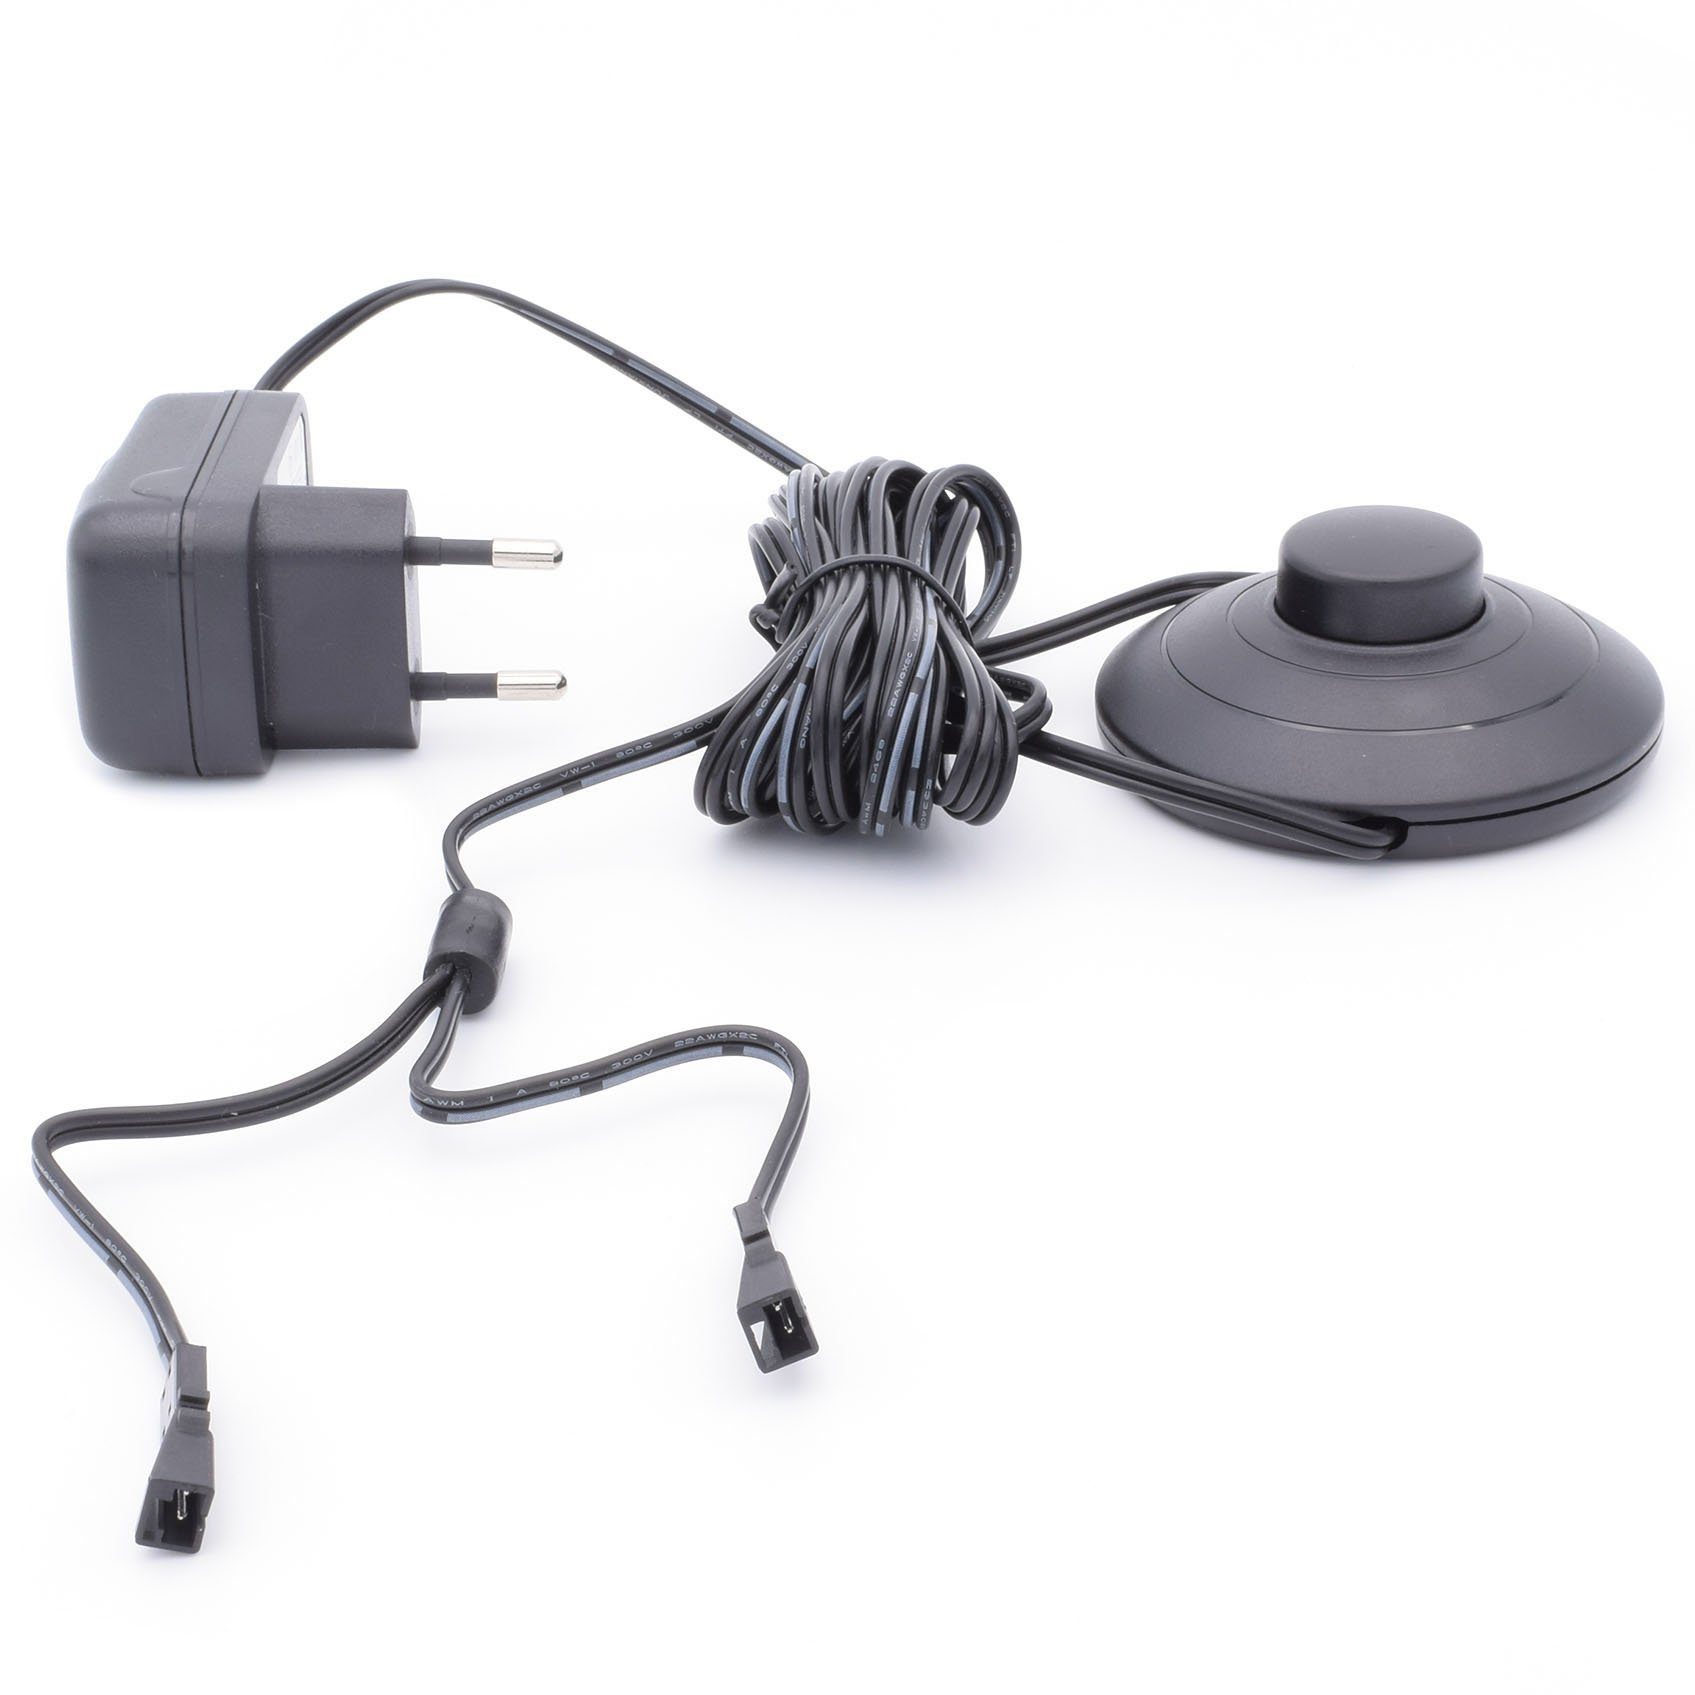 Yu Yang 6W Steckernetzteil Trafo (12V,6W,Trafo,SteckernetzteilmitFußschalter,2LEDKupplungen,Netzteil) mit Fußschalter LED